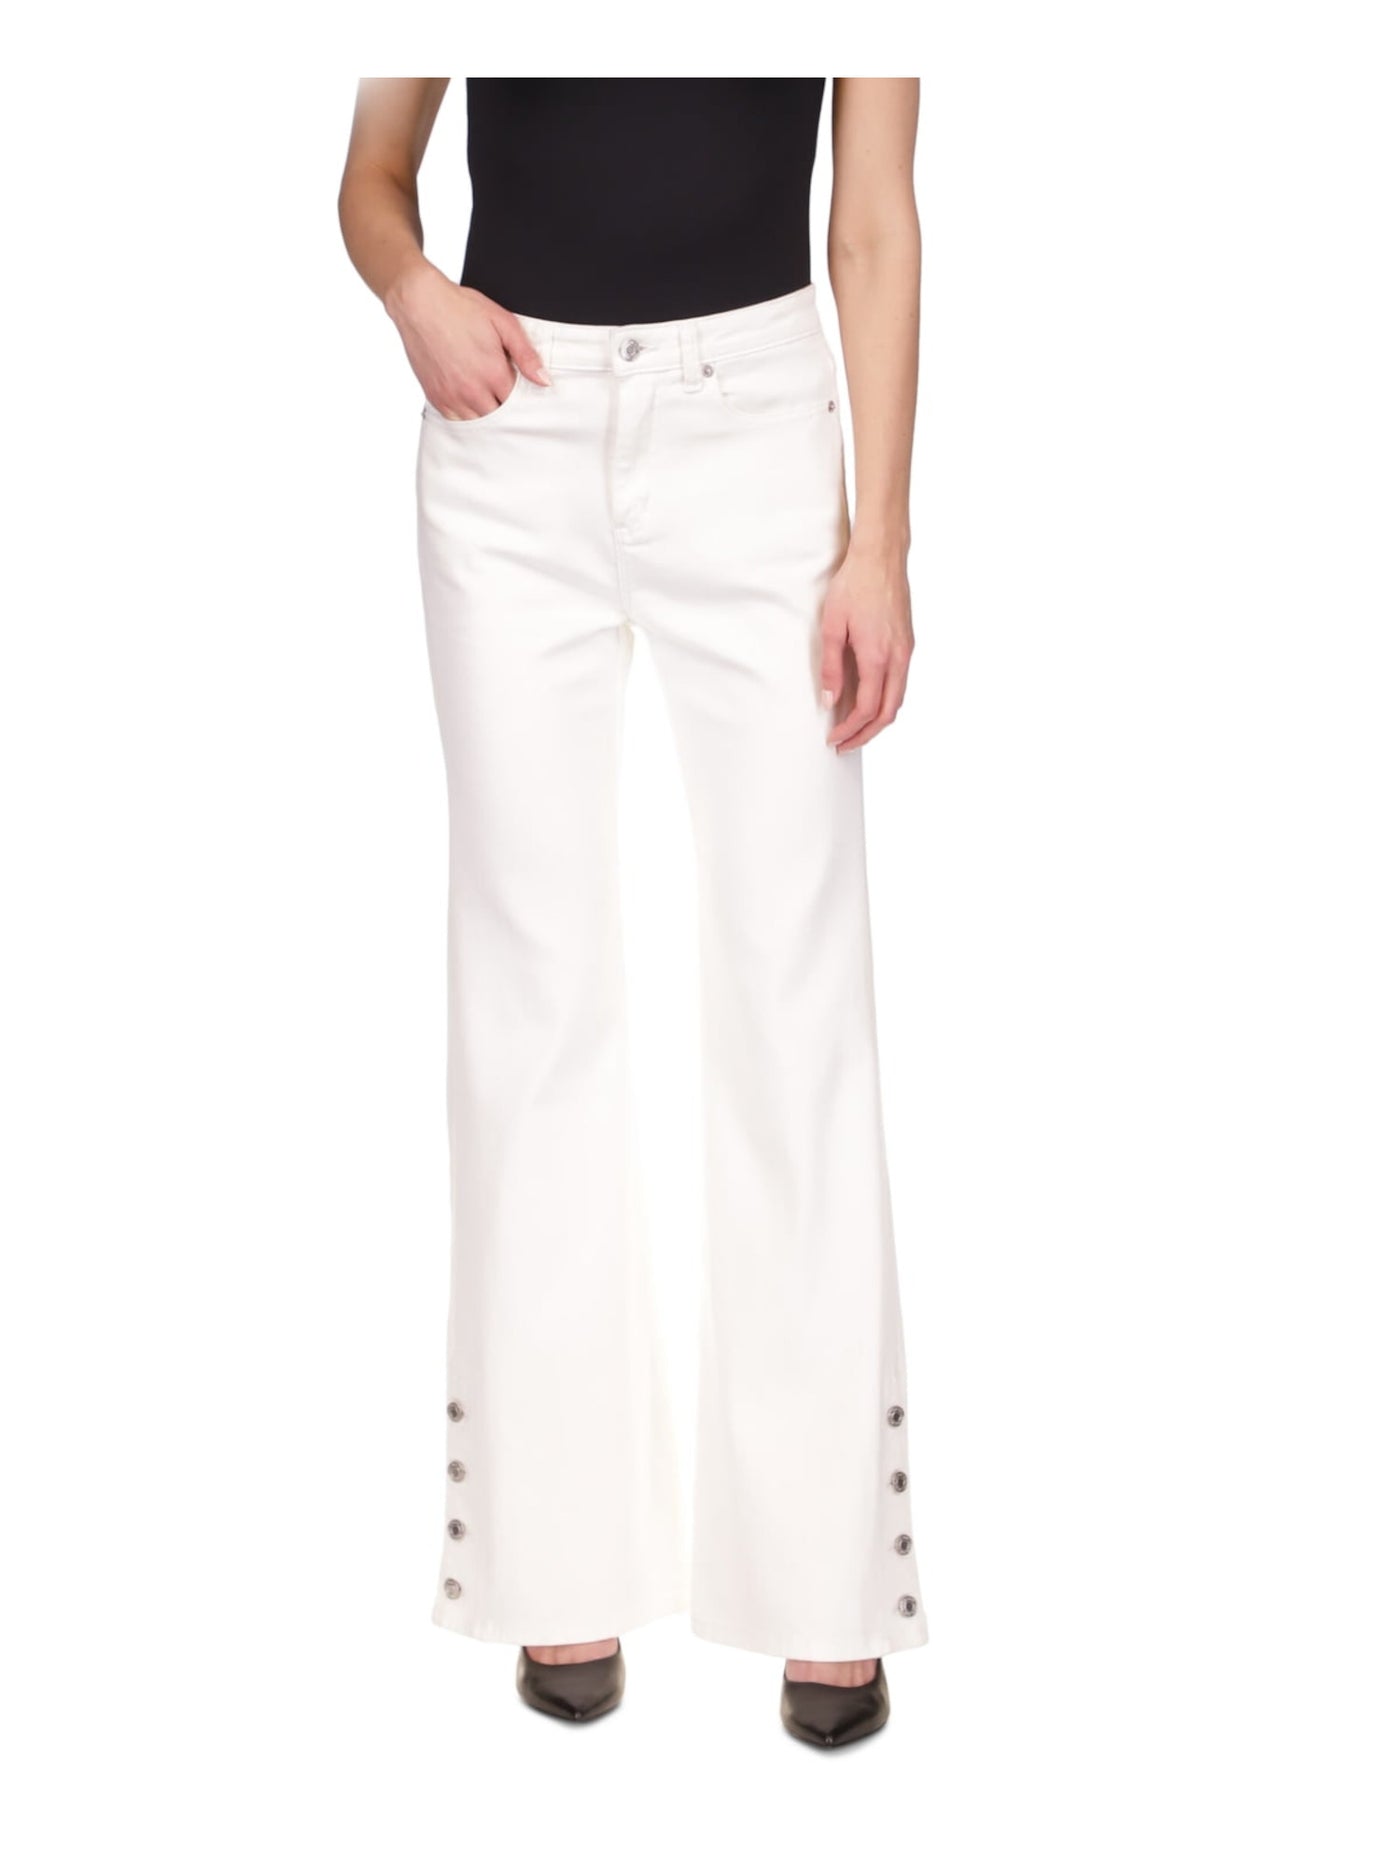 MICHAEL MICHAEL KORS Womens White Zippered Pocketed Button Detail Cuffs High Waist Jeans 12